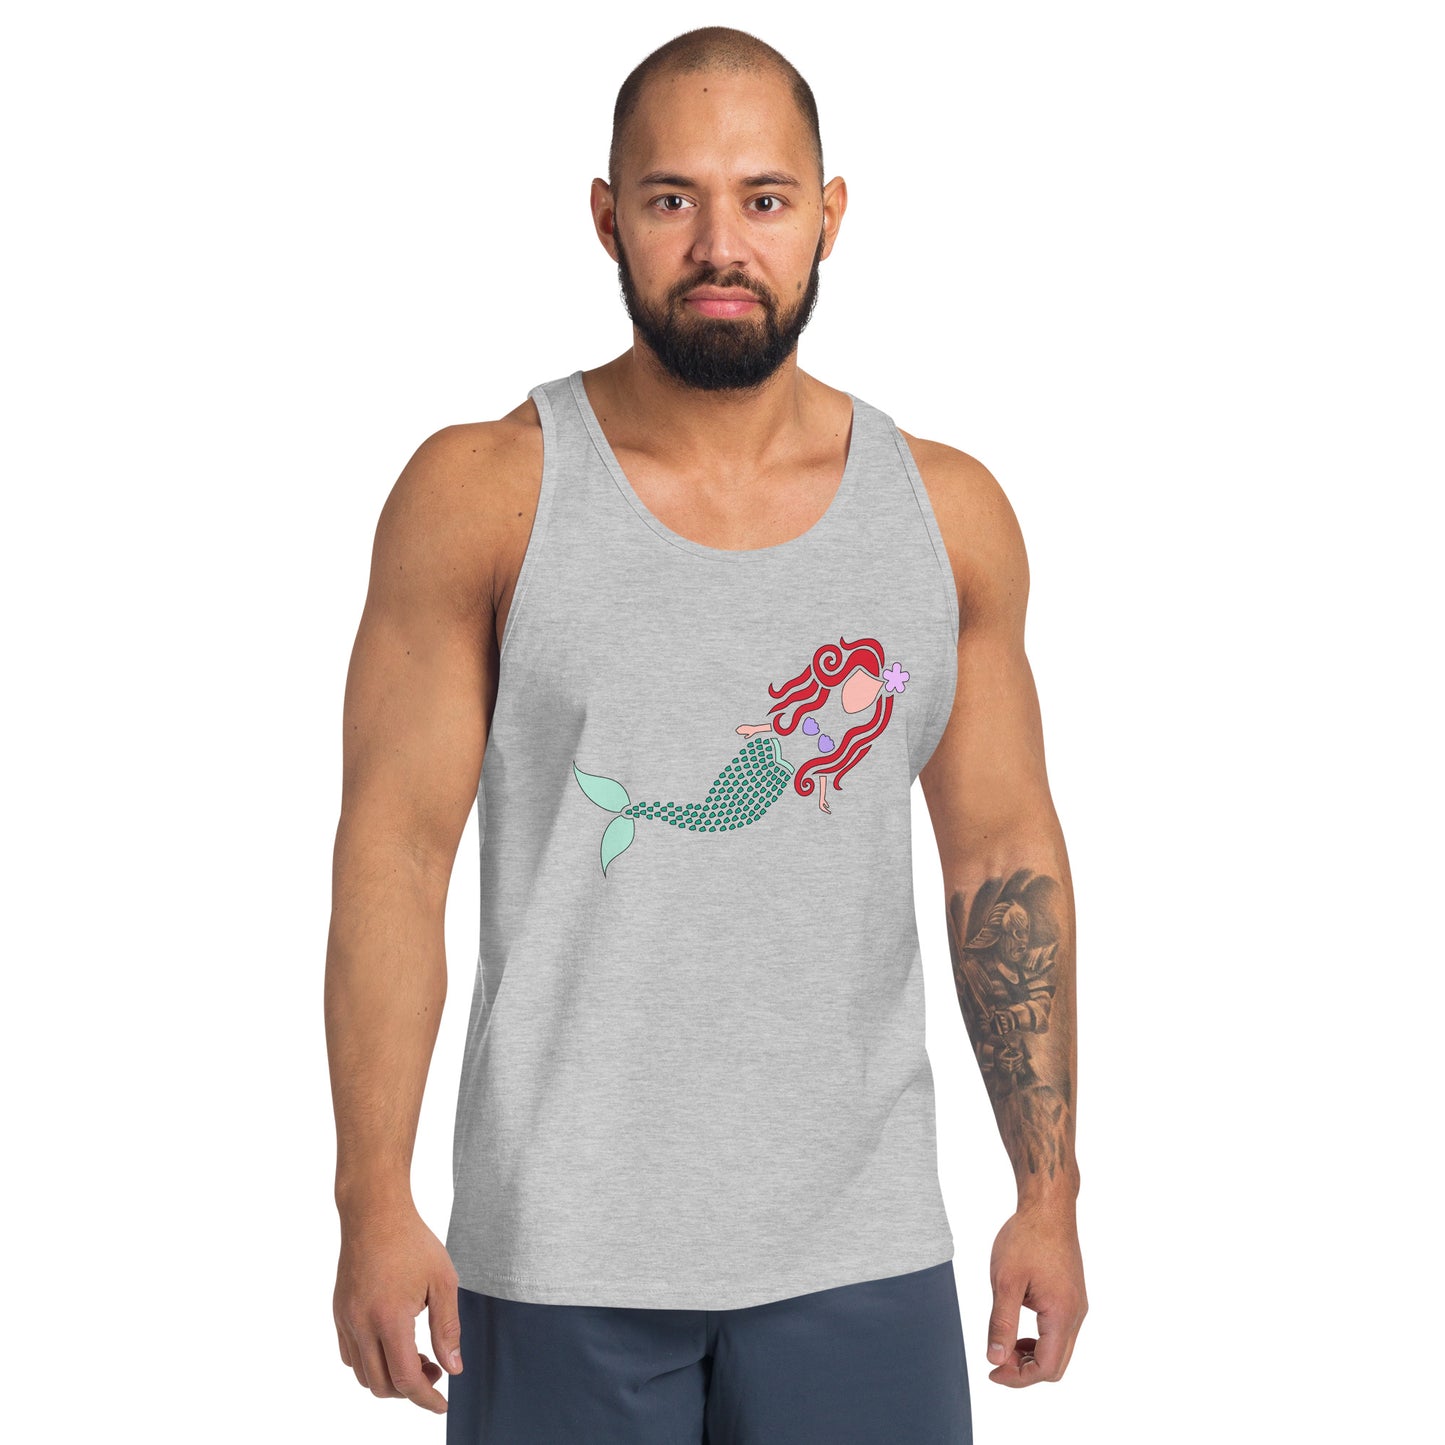 A Mermaid Under the Water Men's Tank Top